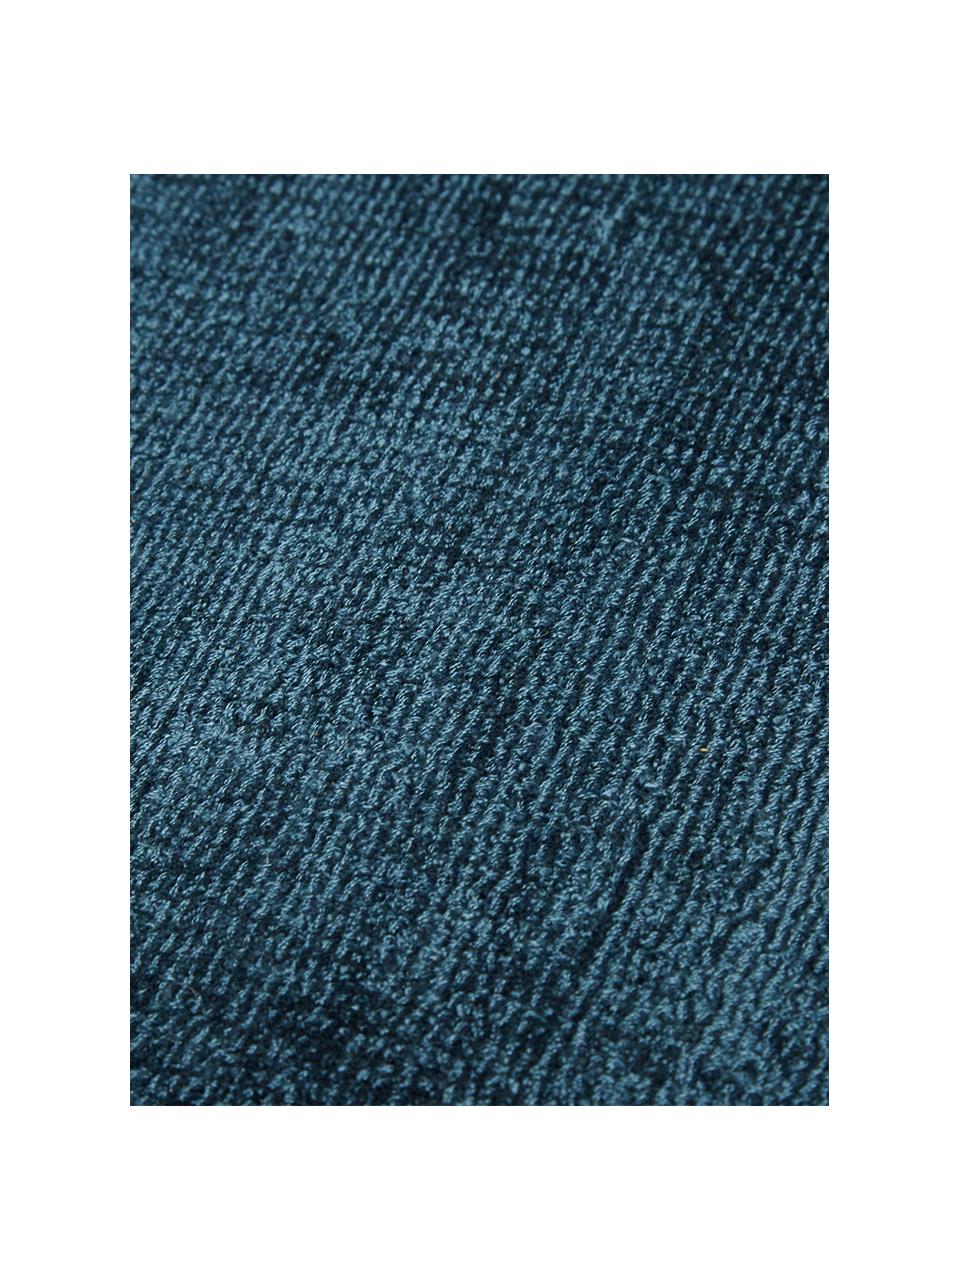 Rond viscose vloerkleed Jane in donkerblauw, handgeweven, Bovenzijde: 100% viscose, Onderzijde: 100% katoen, Donkerblauw, Ø 150 cm (maat M)